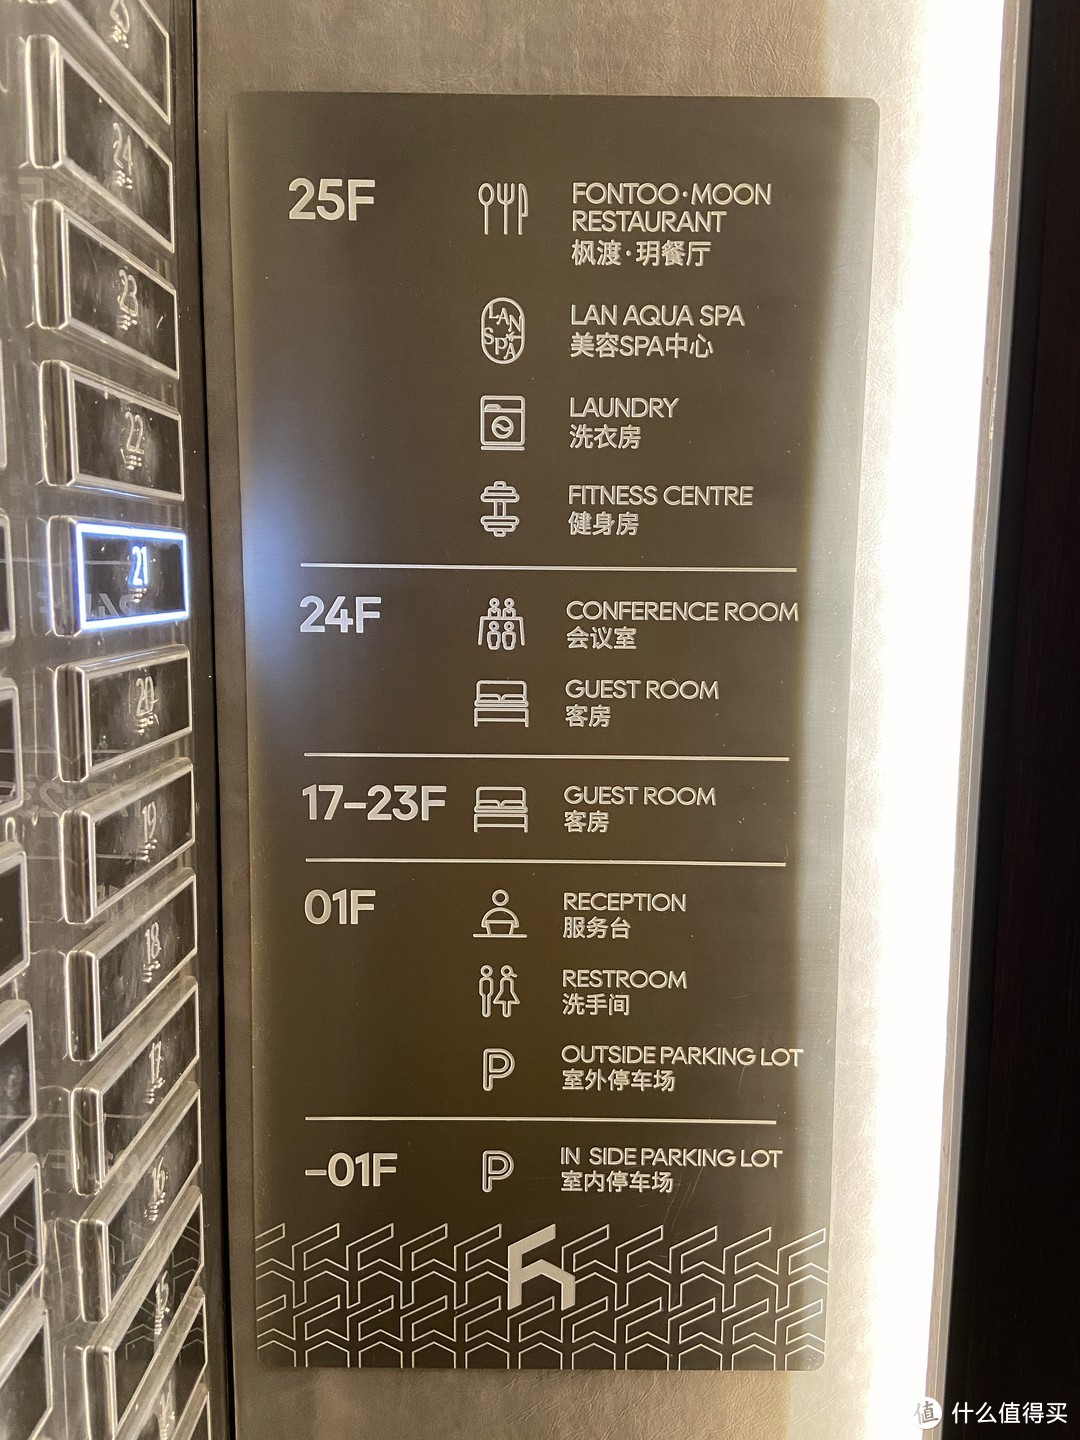 电梯里的楼层分布表